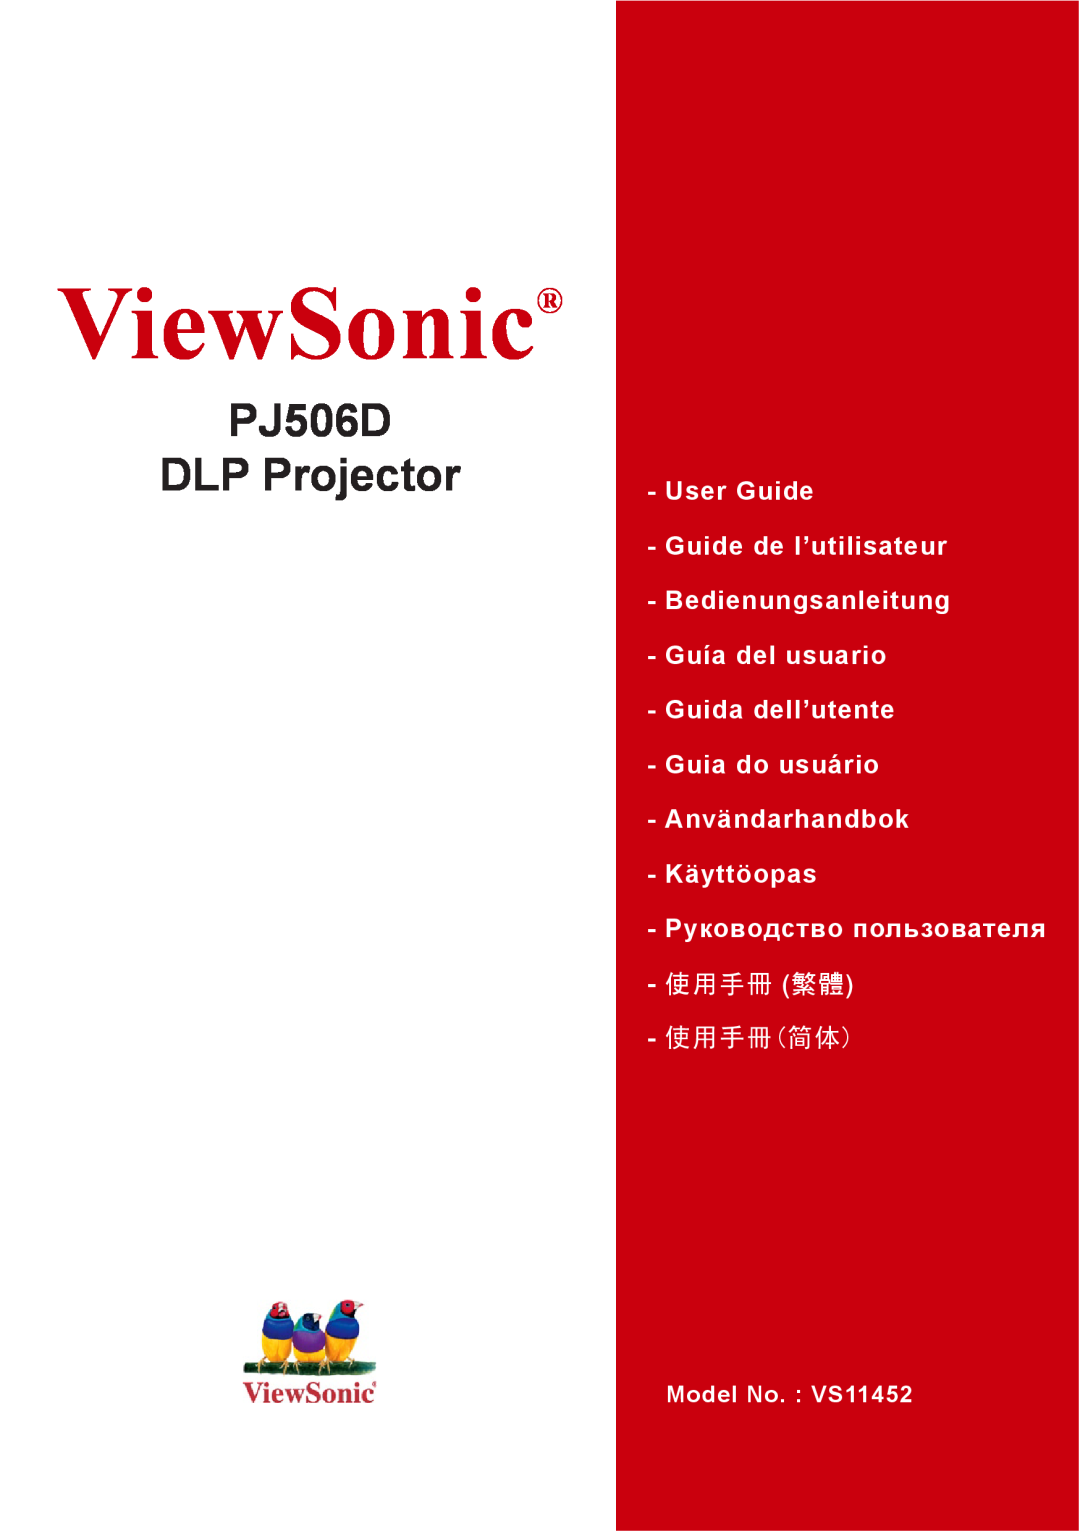 ViewSonic VS11452 manual ViewSonic, PJ506D DLP Projector, User Guide Guide de l’utilisateur, 使用手冊 繁體, 使用手冊简体 